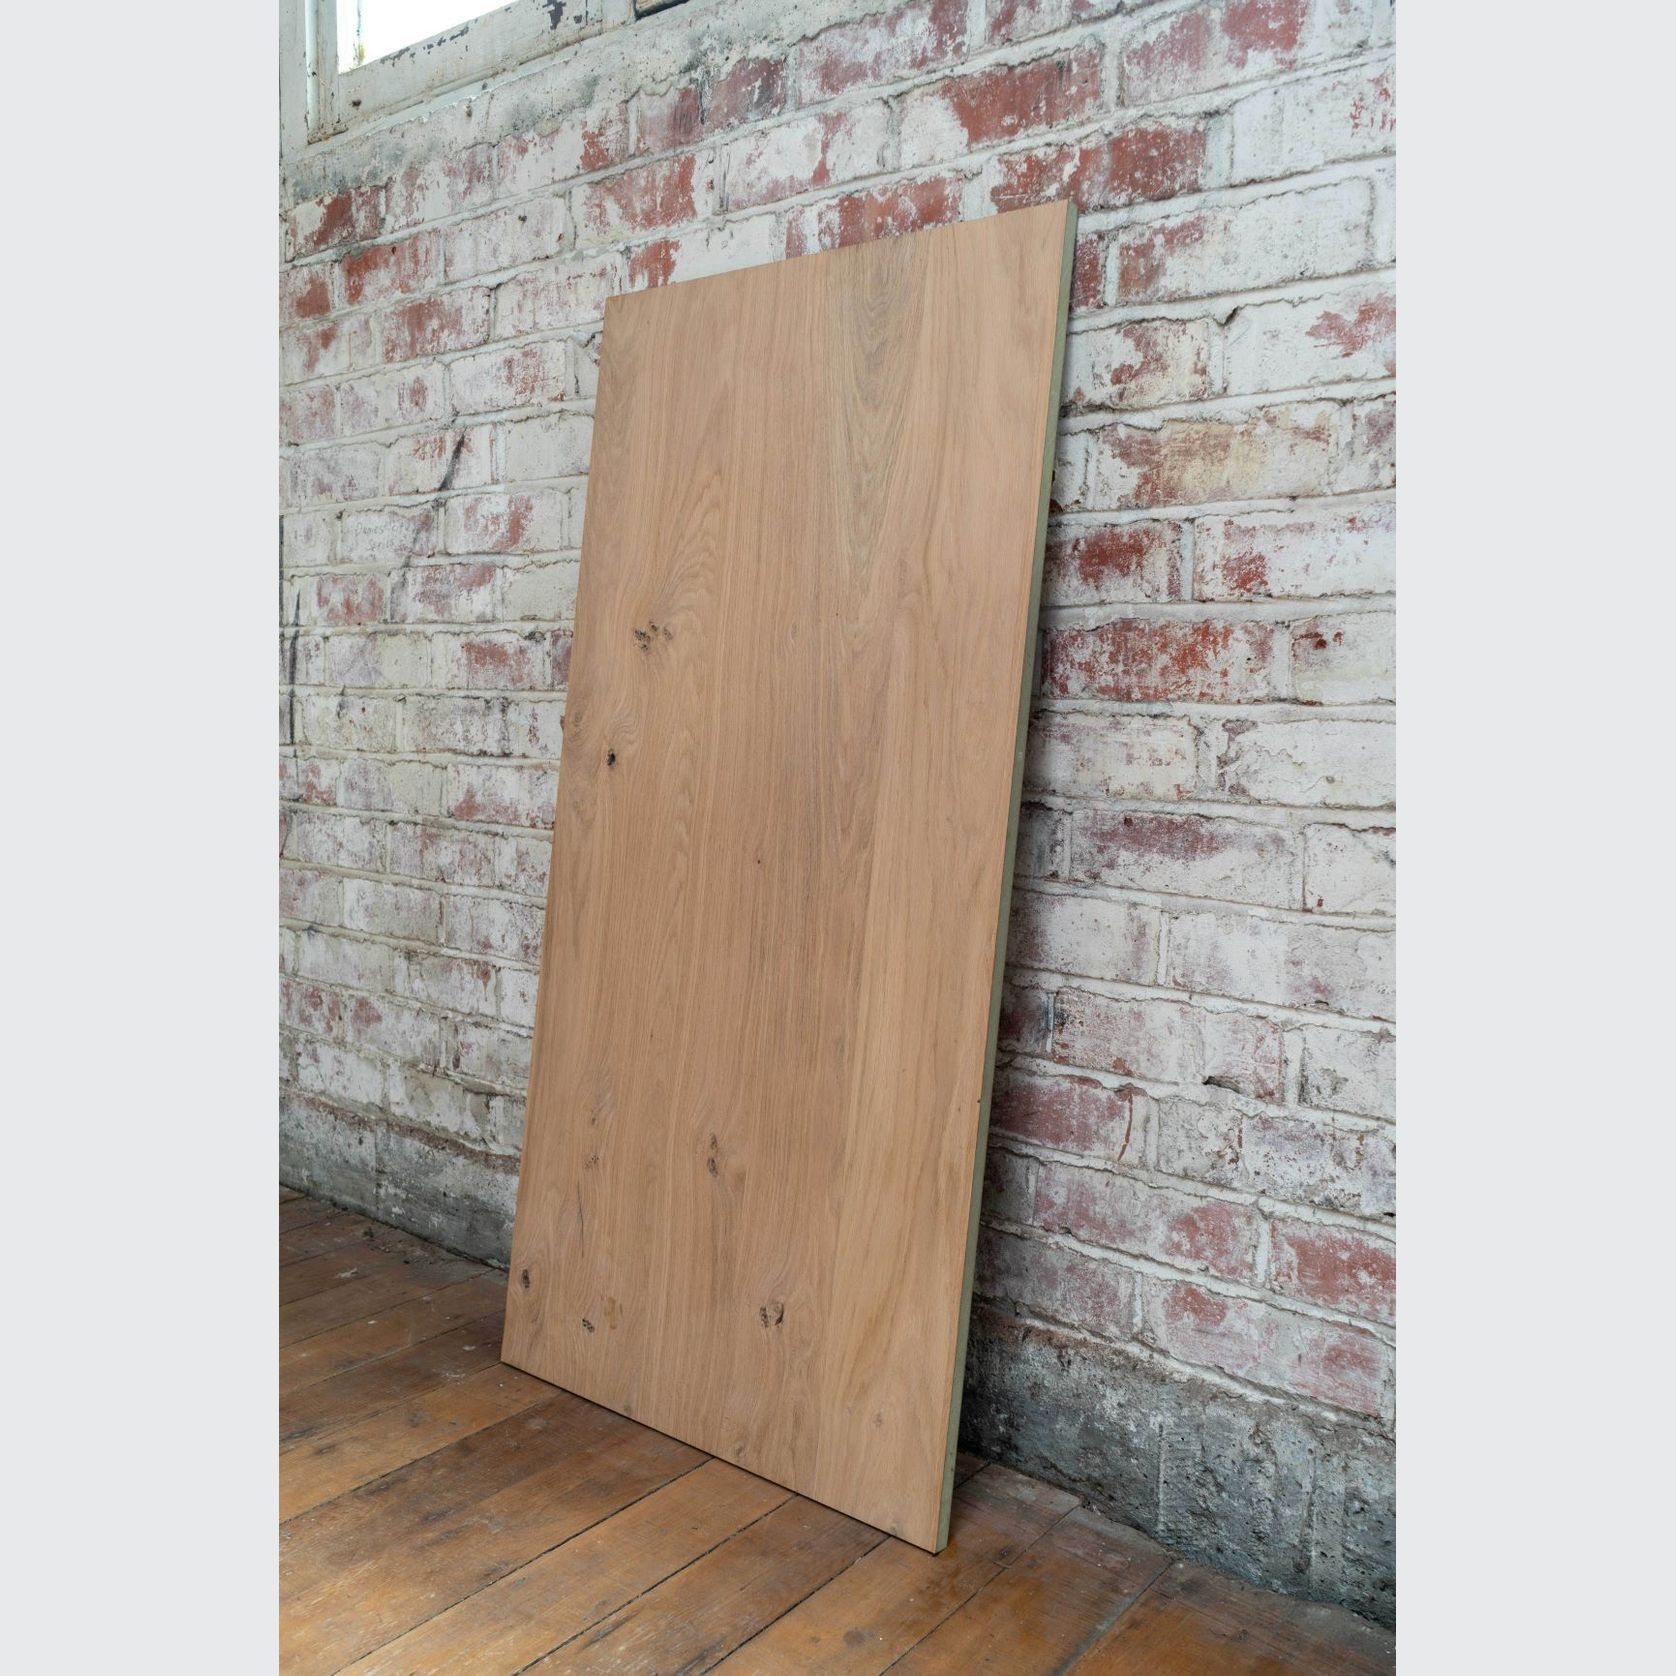 Rustica Knotty Oak | Rustic Timber Veneer Panels gallery detail image